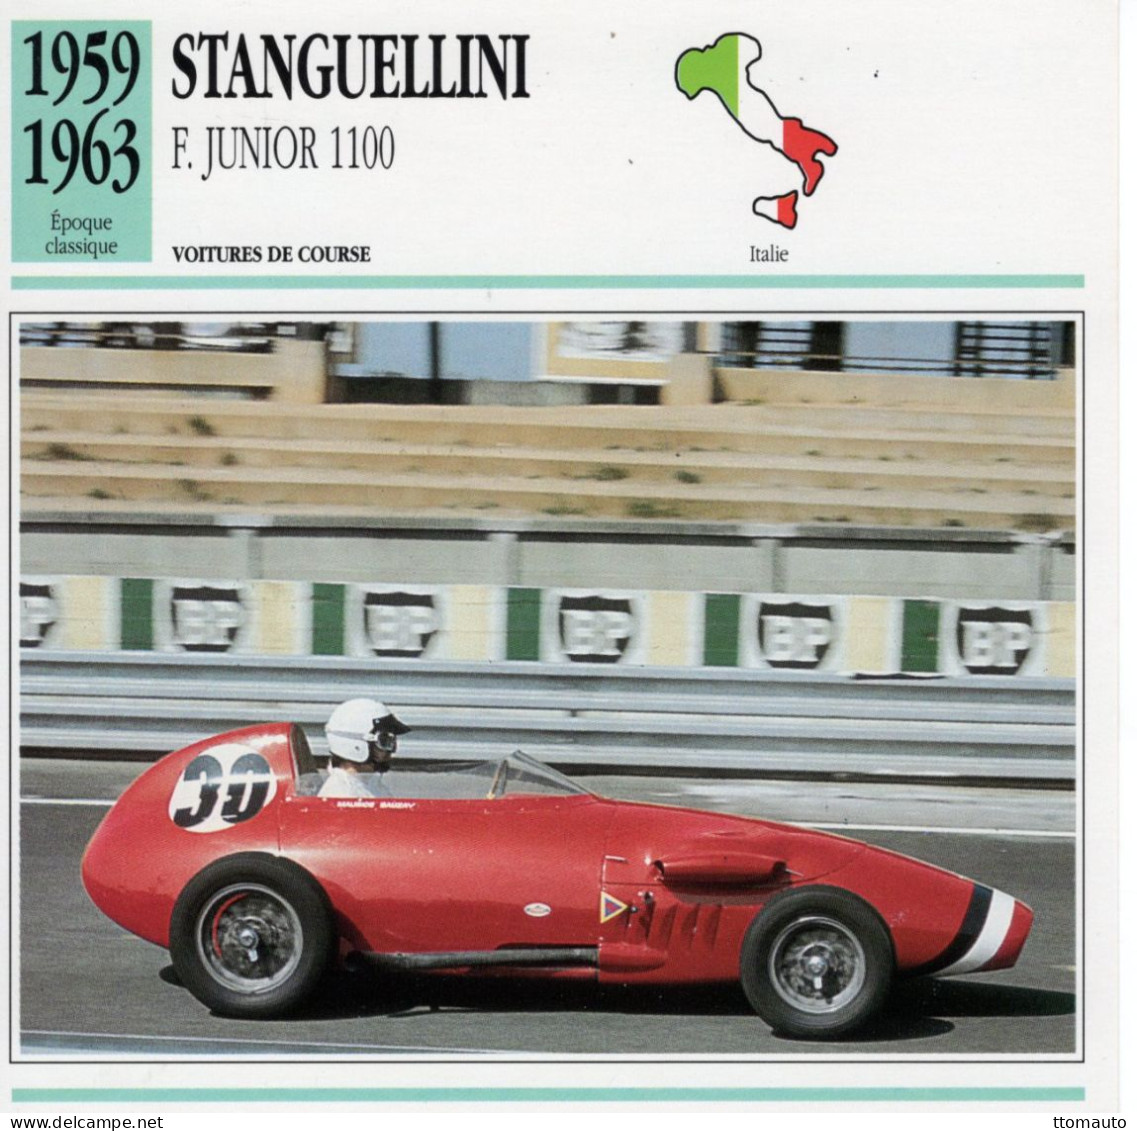 Stanguellini Formula Junior 1100 -  1960  - Voiture De Course -  Fiche Technique Automobile (I) - Cars